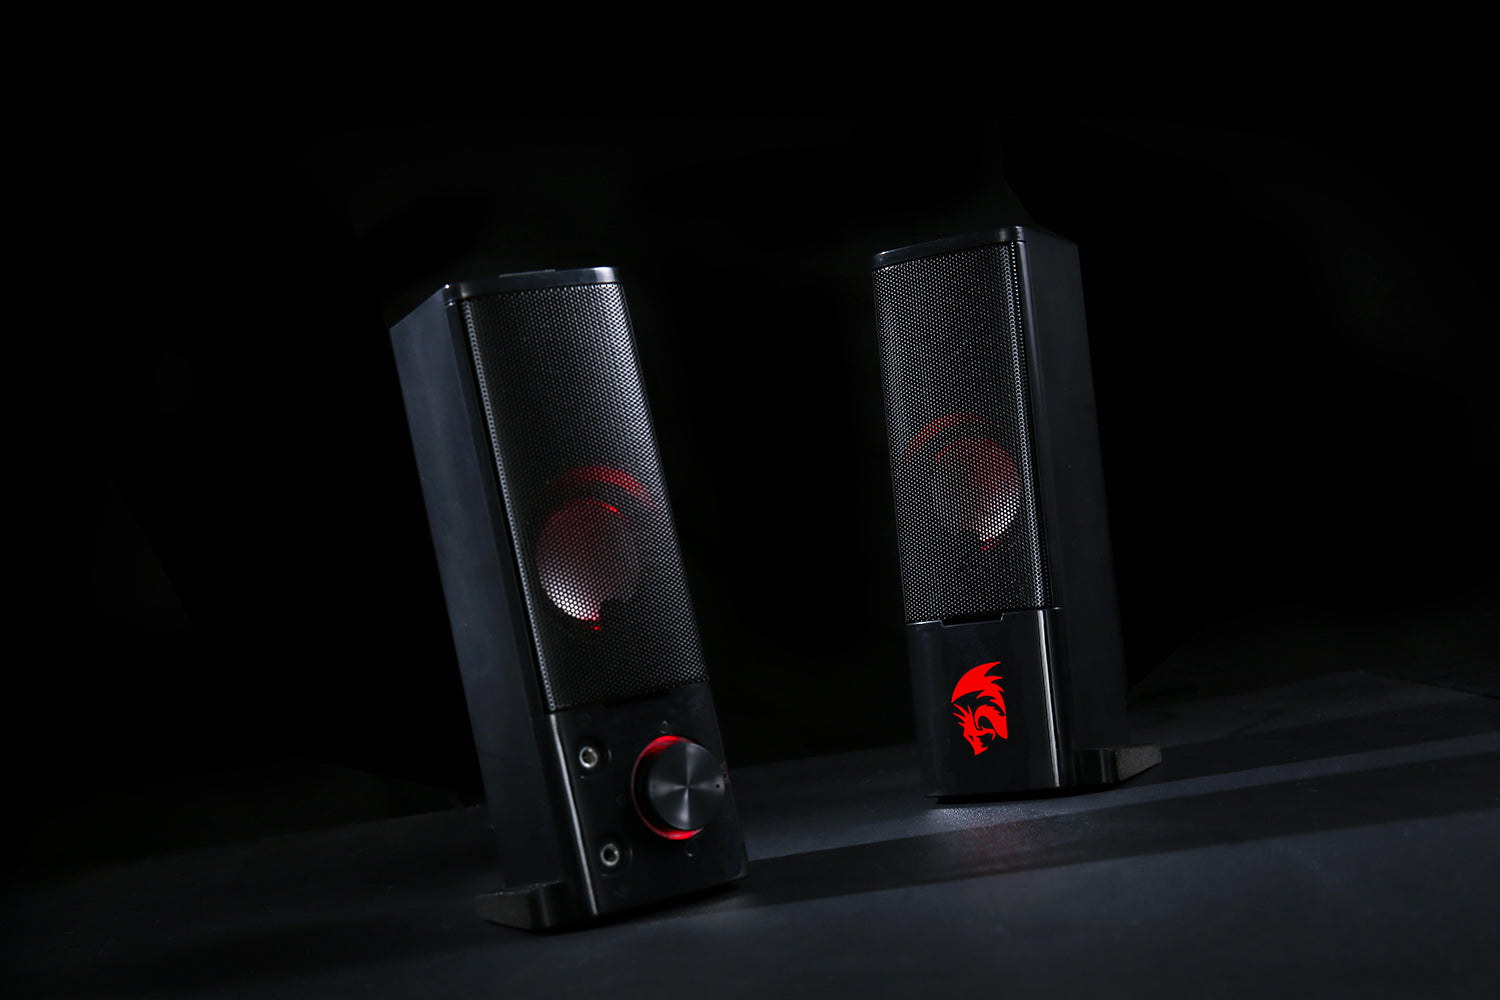 GS550 Orpheus PC Gaming Speakers